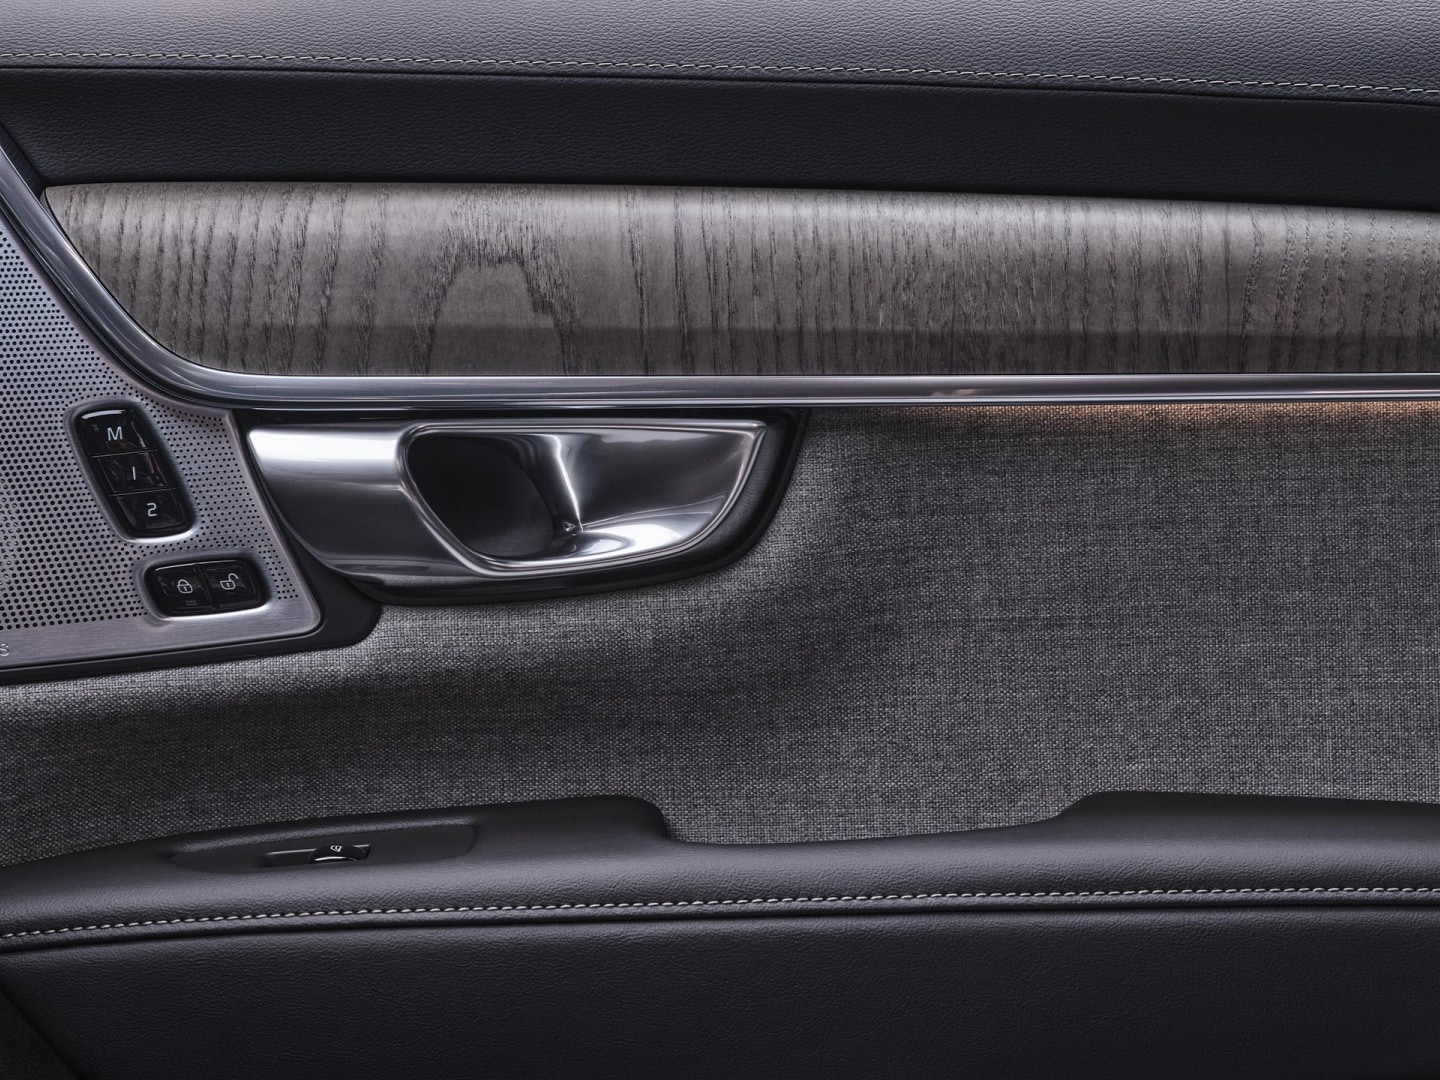 Drzwi przednie pasażera widziane z wnętrza hybrydy plug-in Volvo V90.